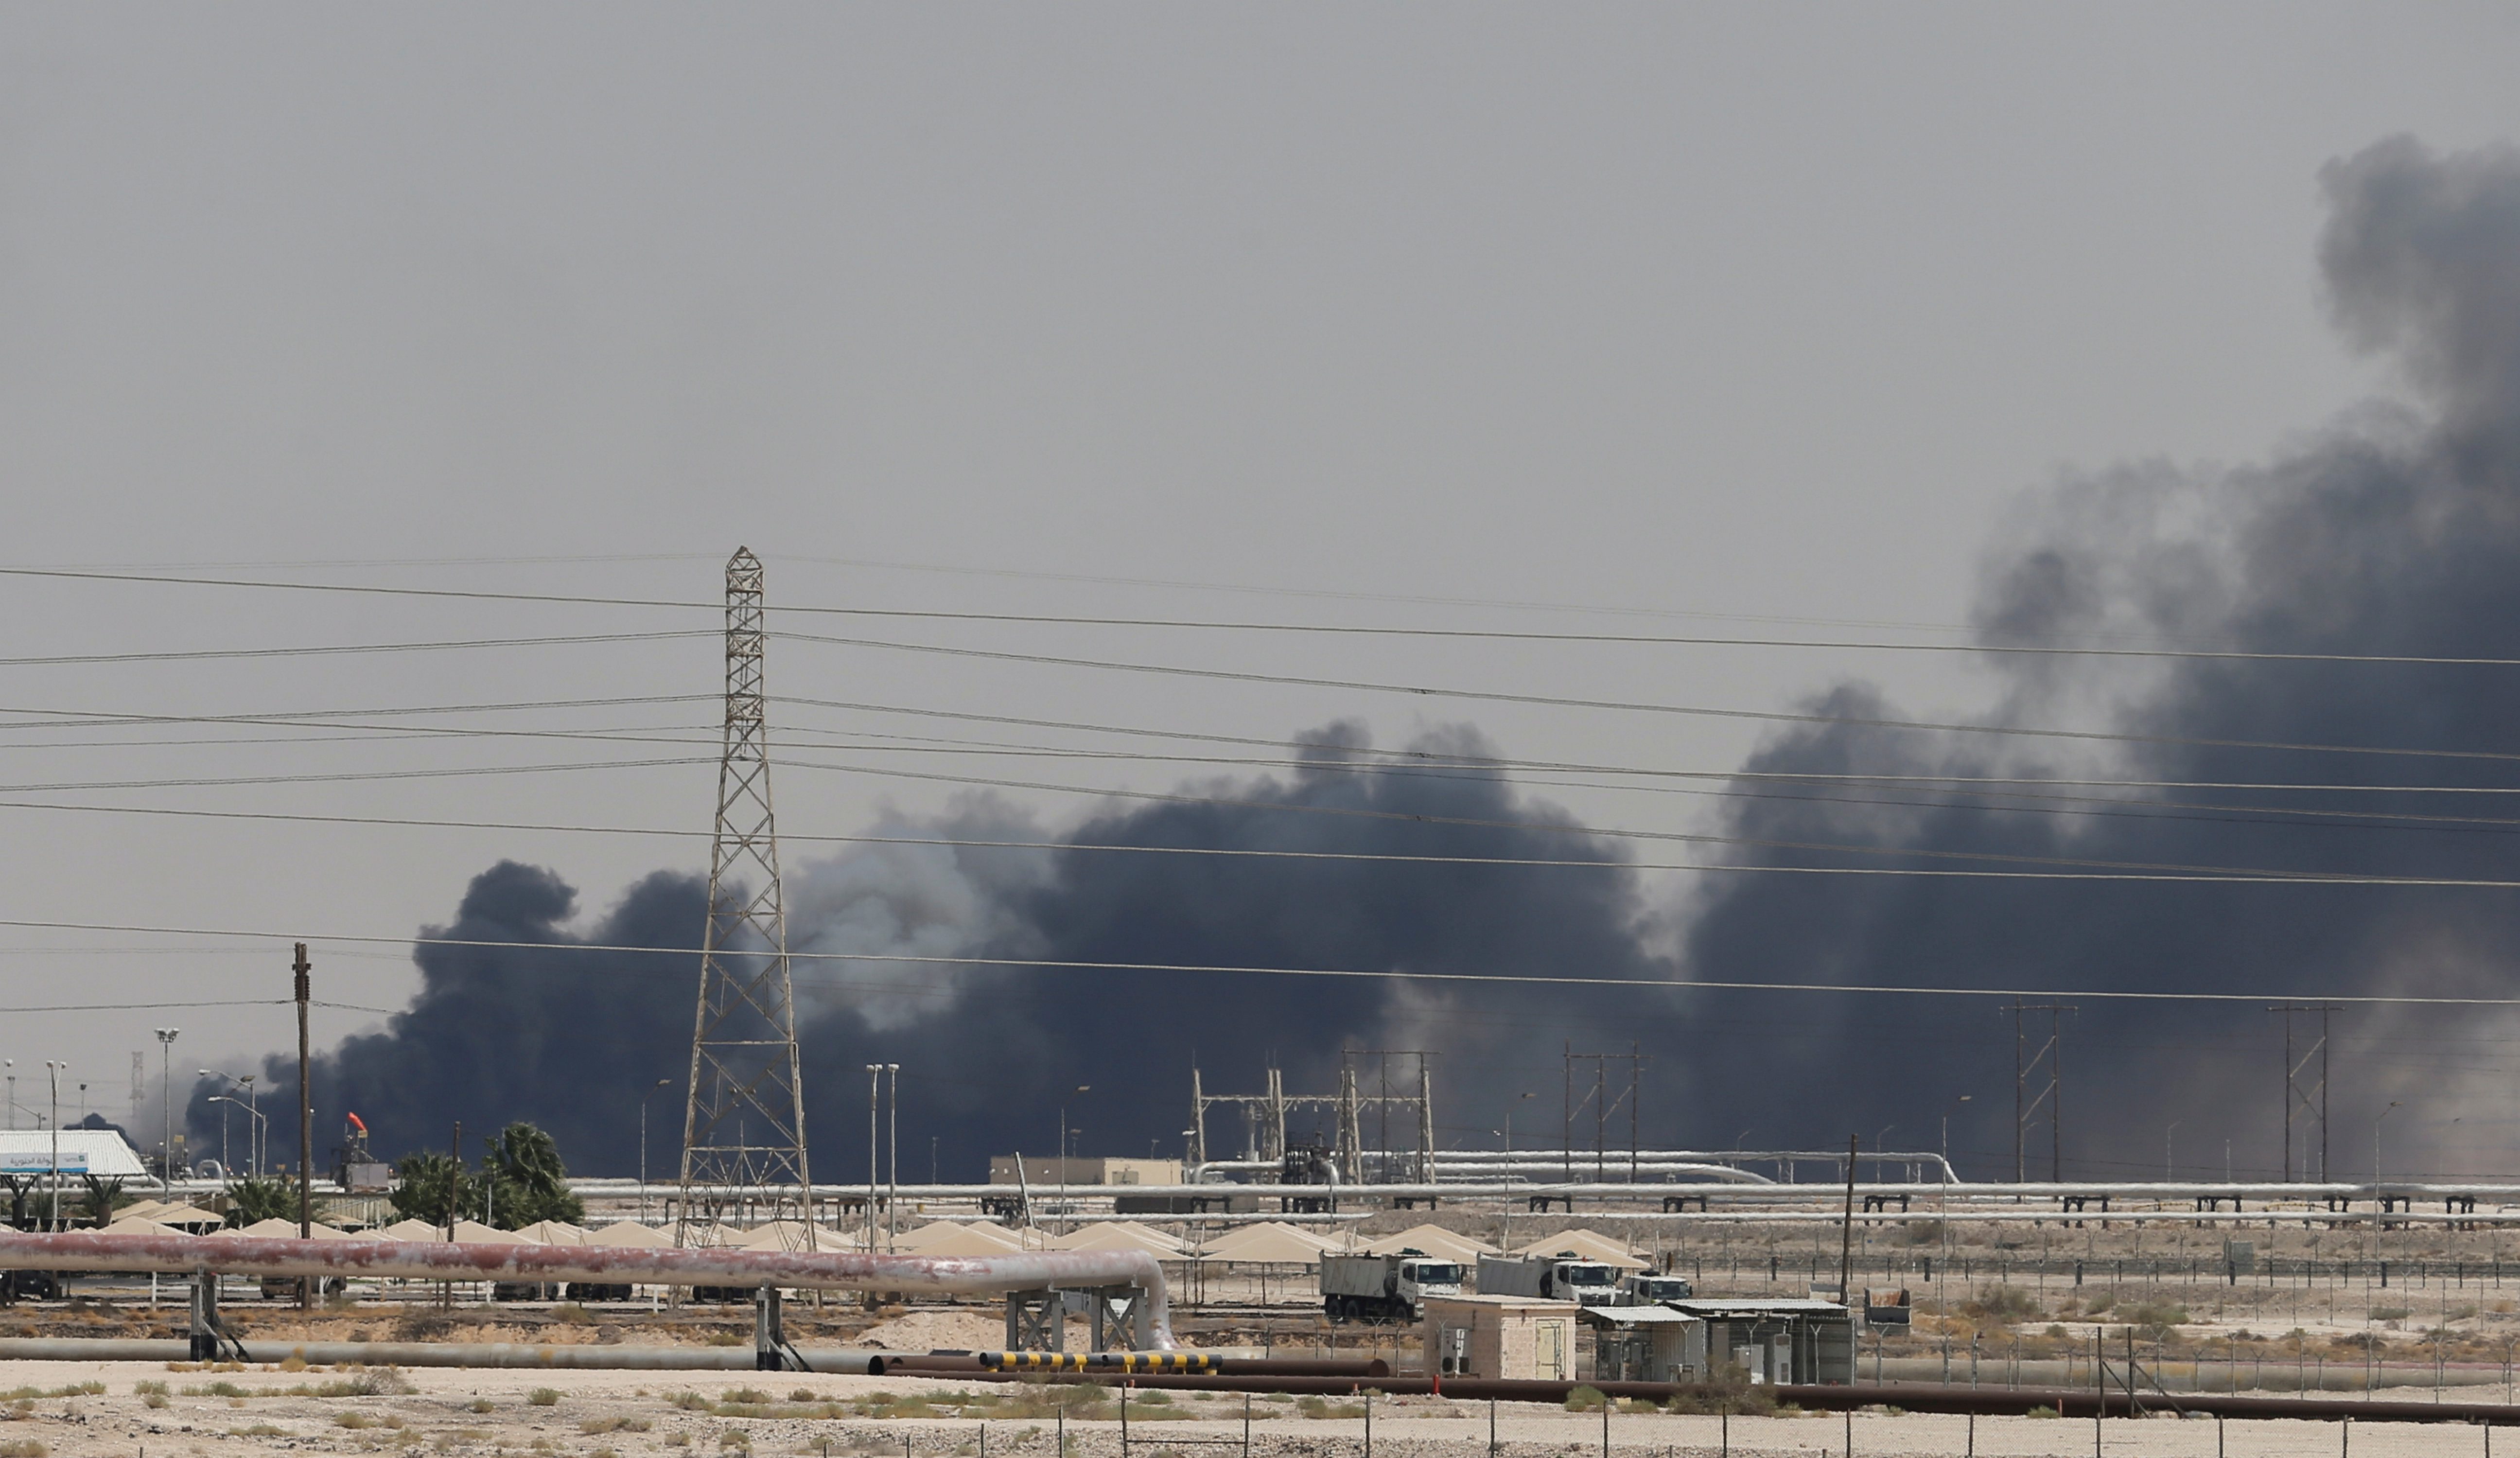 صحيفة أمريكية السعودية تدرس تأجيل طرح شركة أرامكو للاكتتاب بسبب القصف